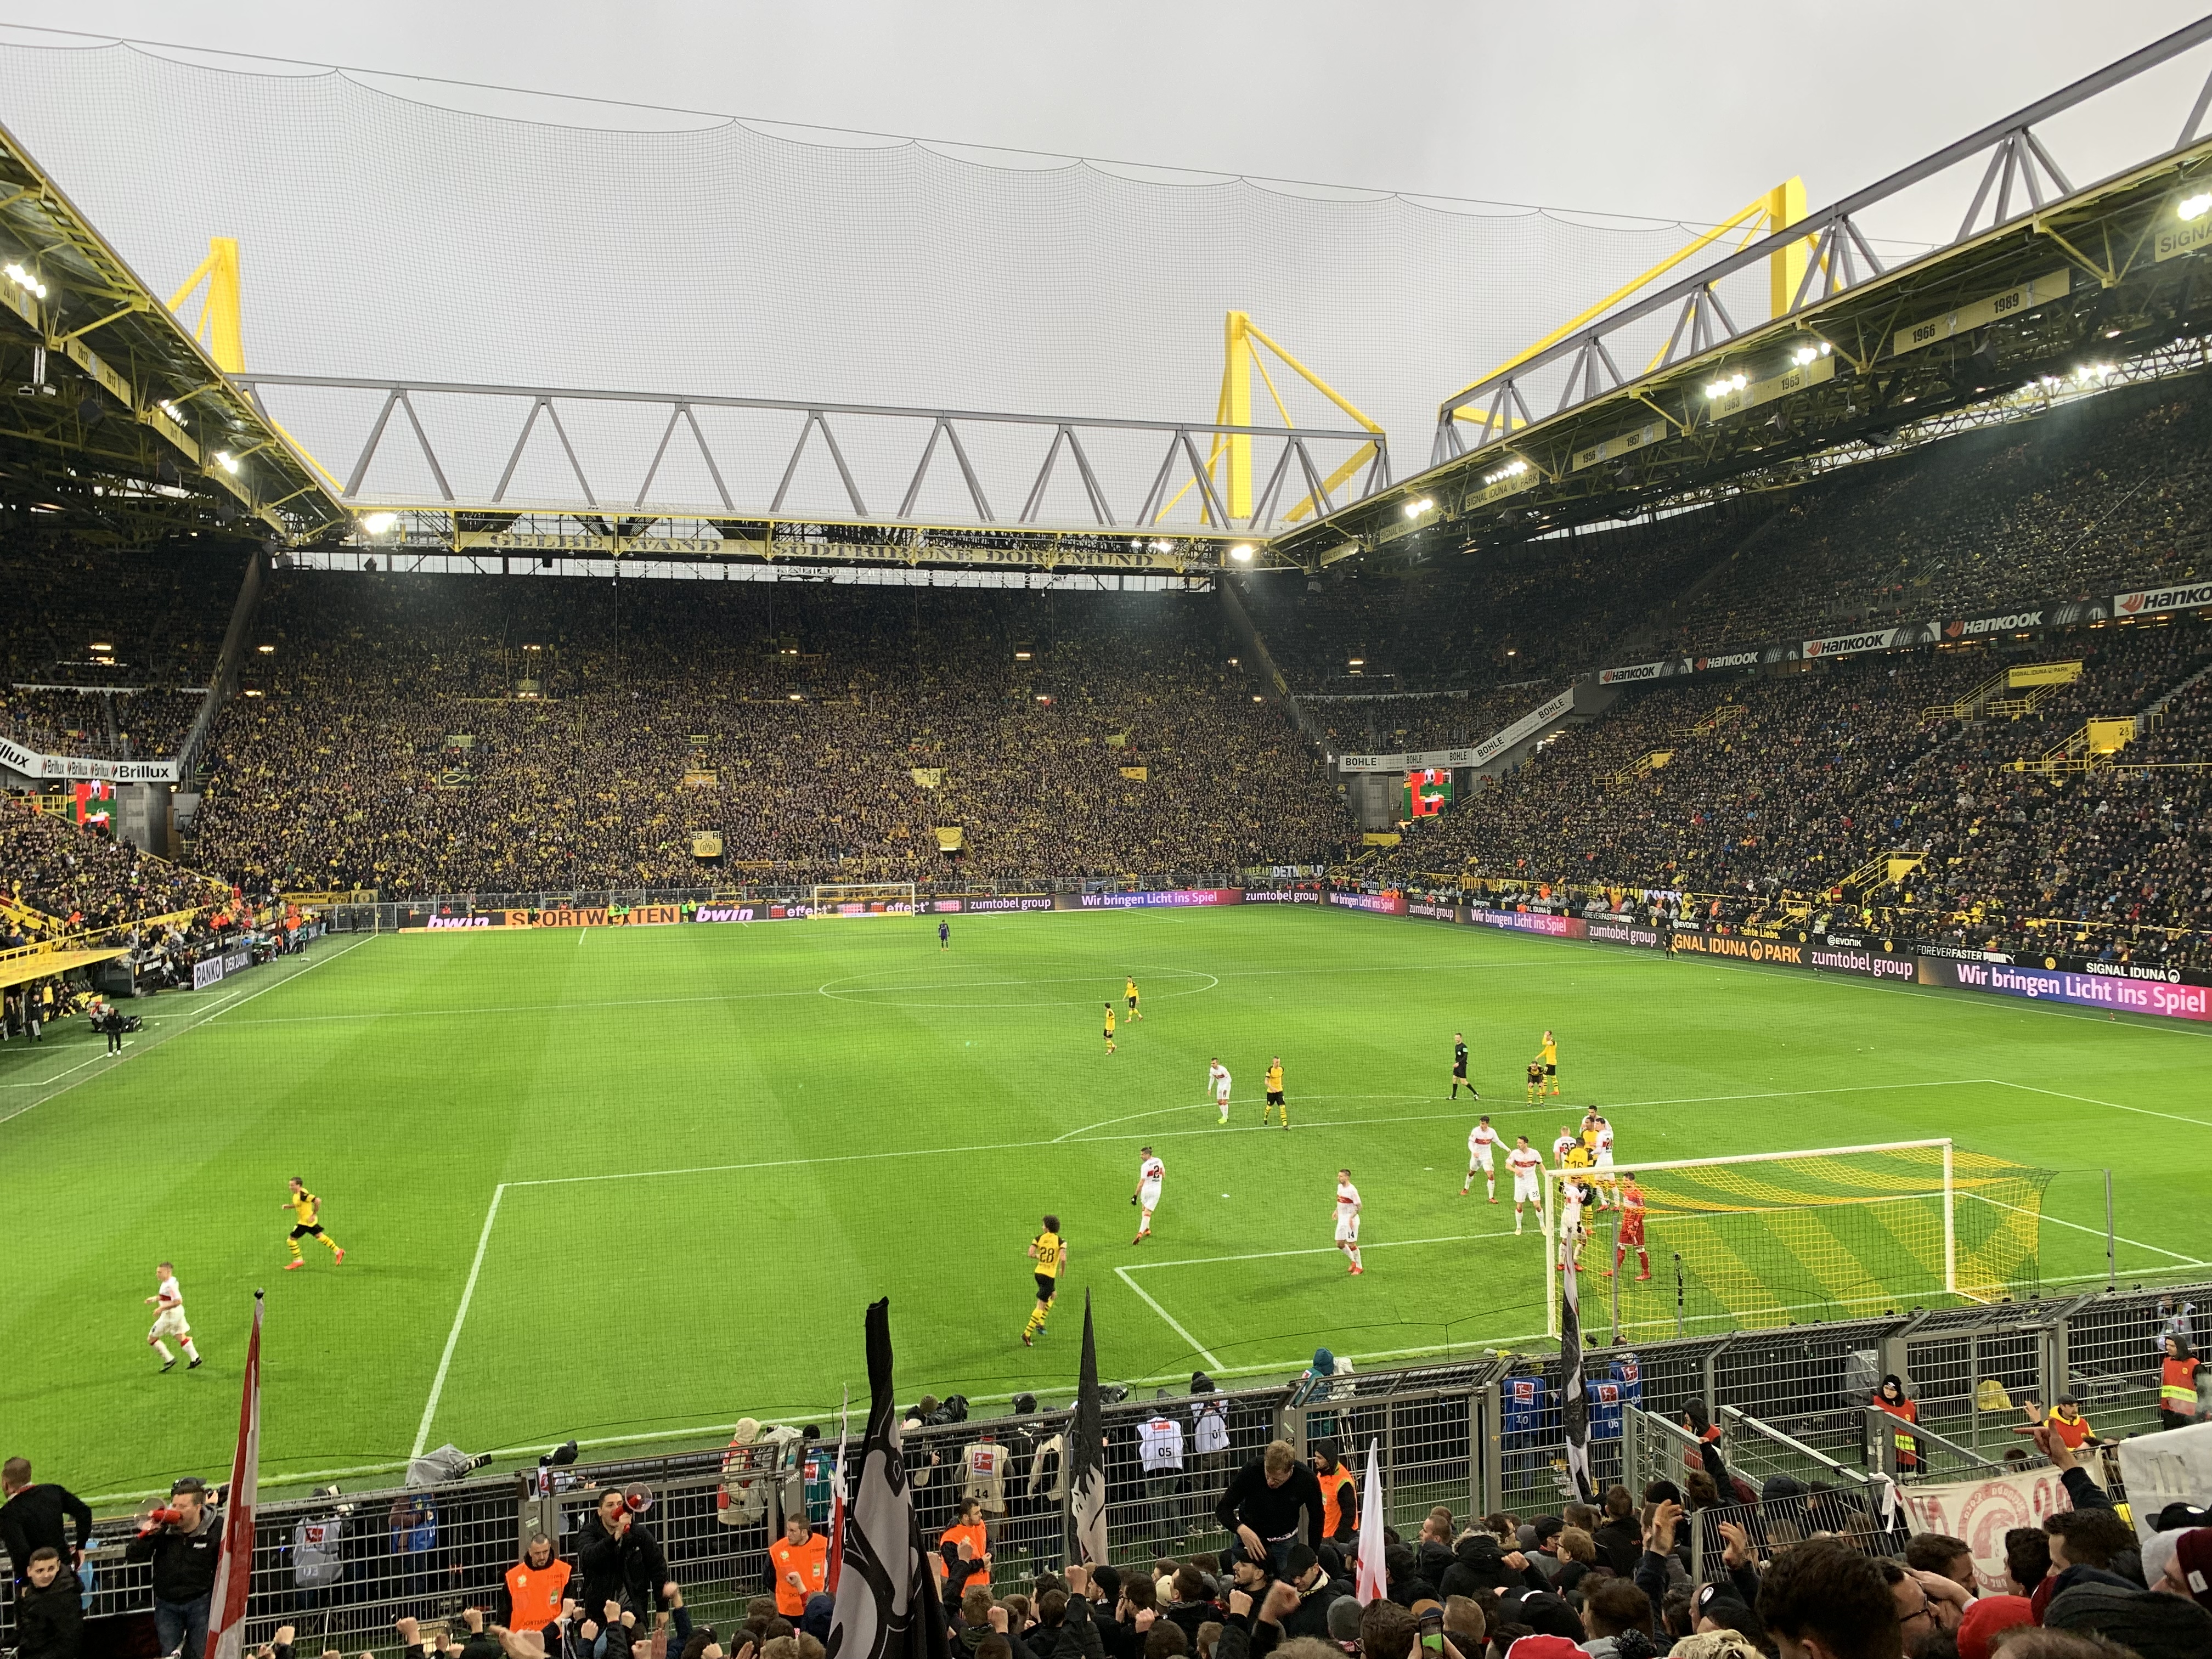 Signal Iduna Park the home of Borussia Dortmund